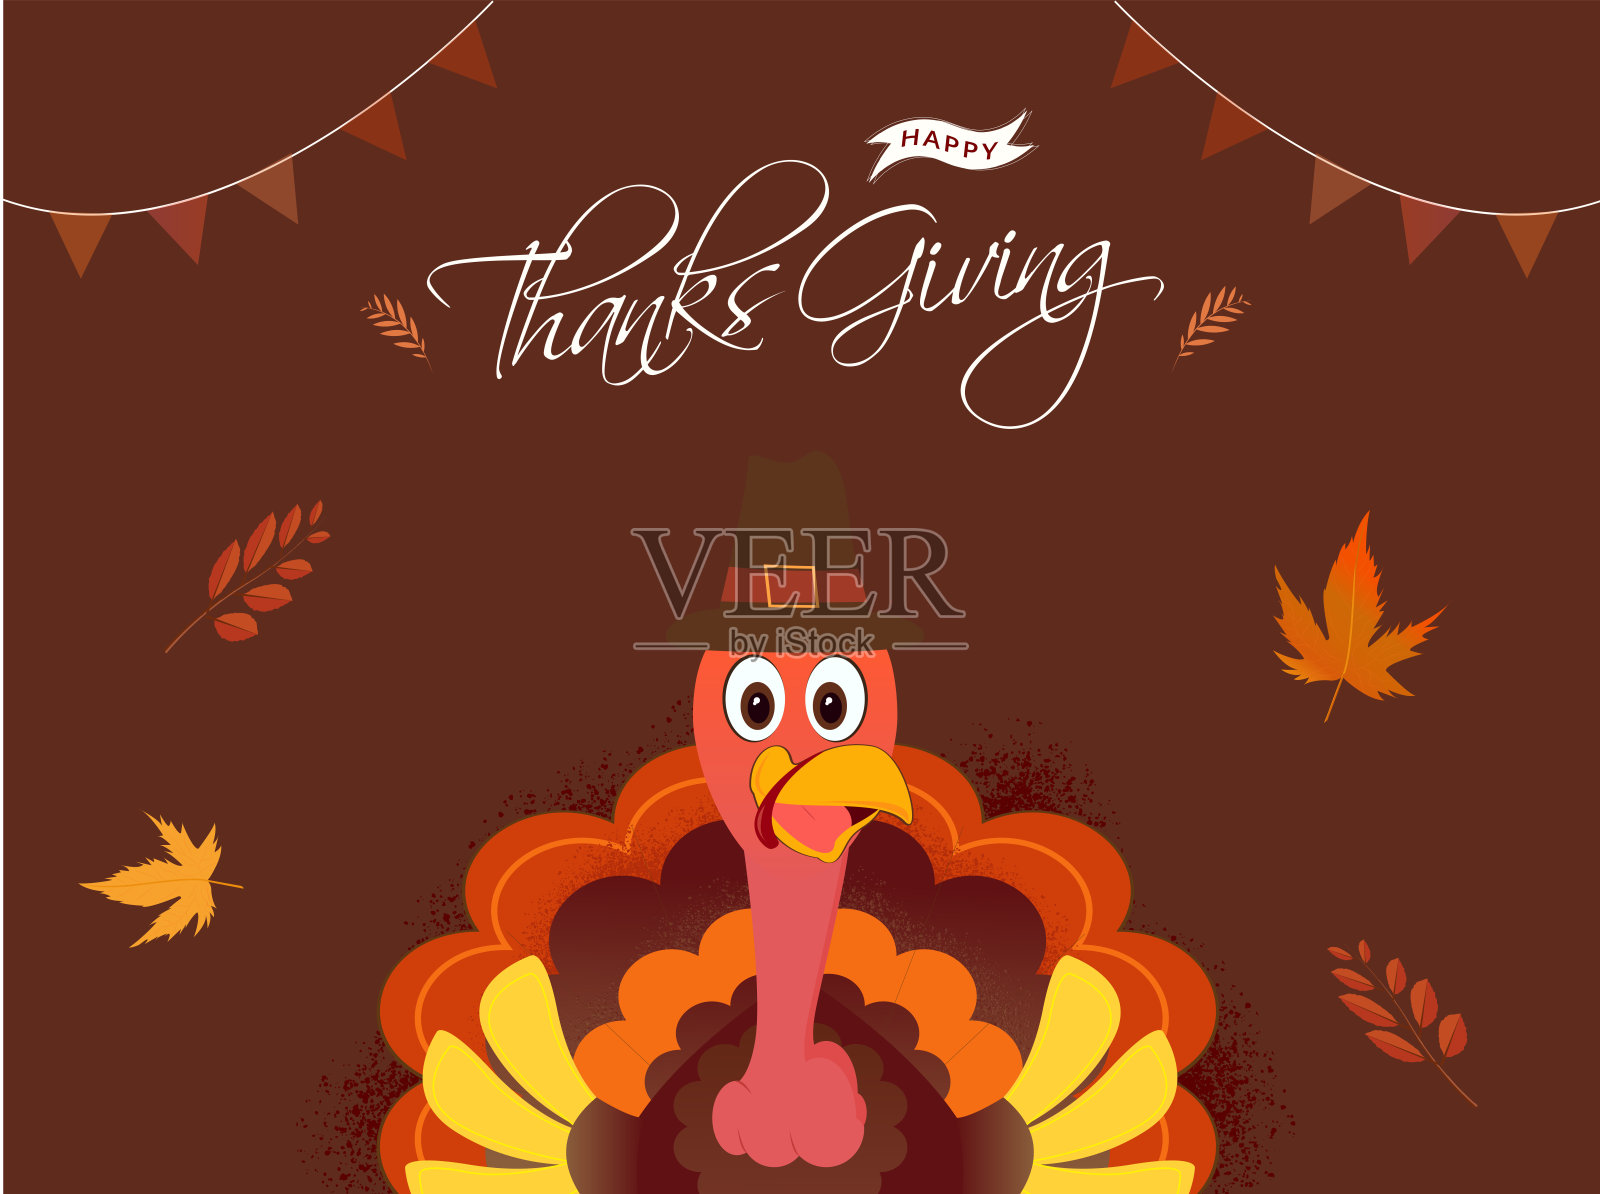 感恩节横幅或海报设计与插图火鸡鸟戴朝圣者的帽子和秋天的树叶装饰在棕色的背景。插画图片素材